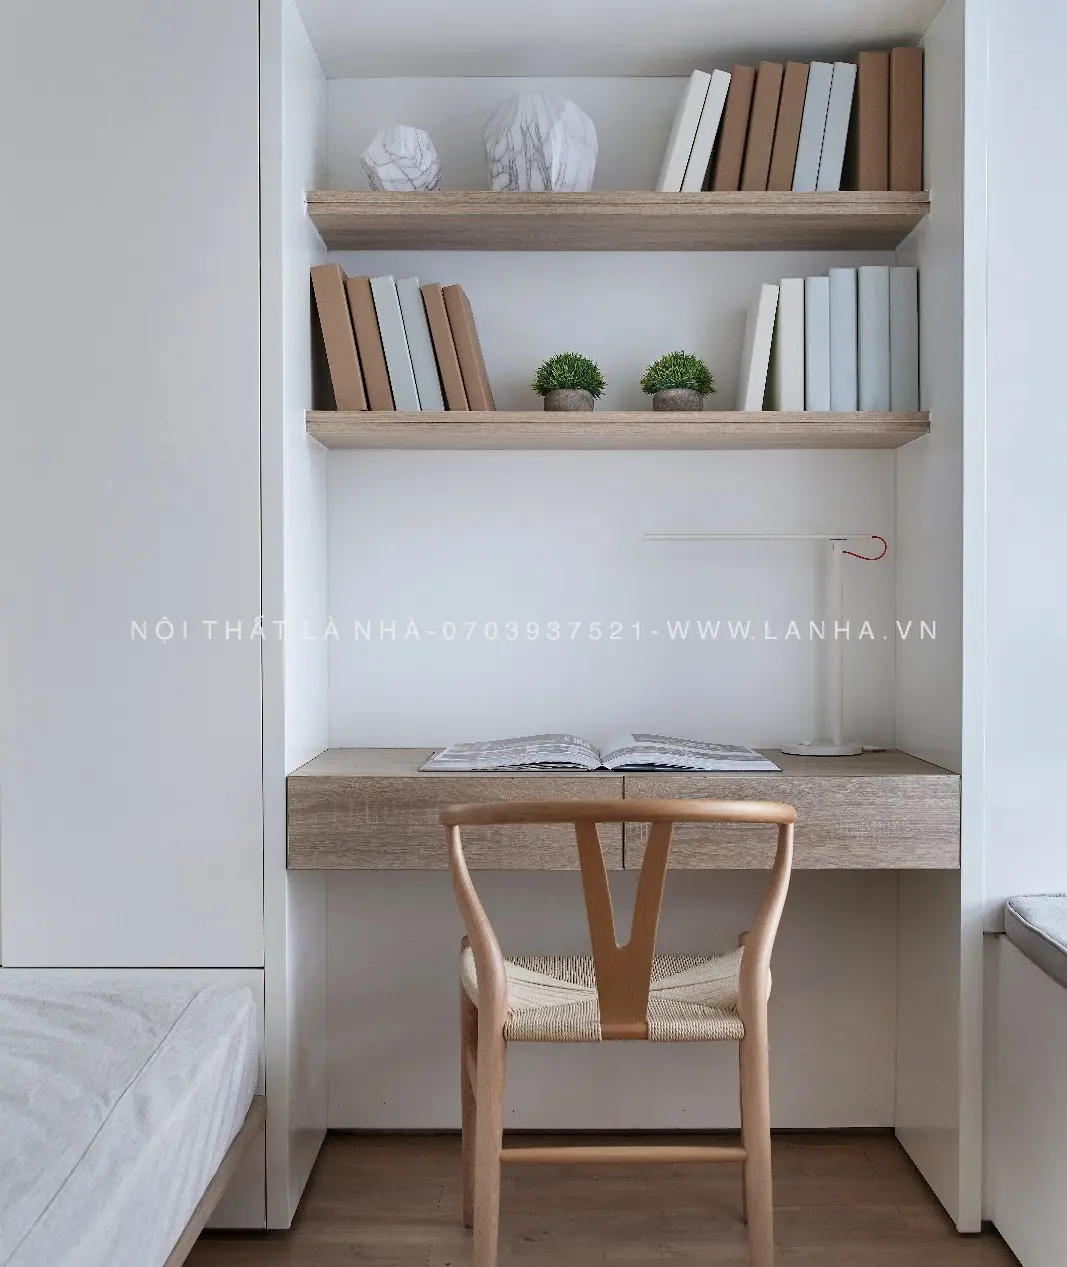 Phong cách tối giản sử dụng đồ nội thất có gam màu cơ bản